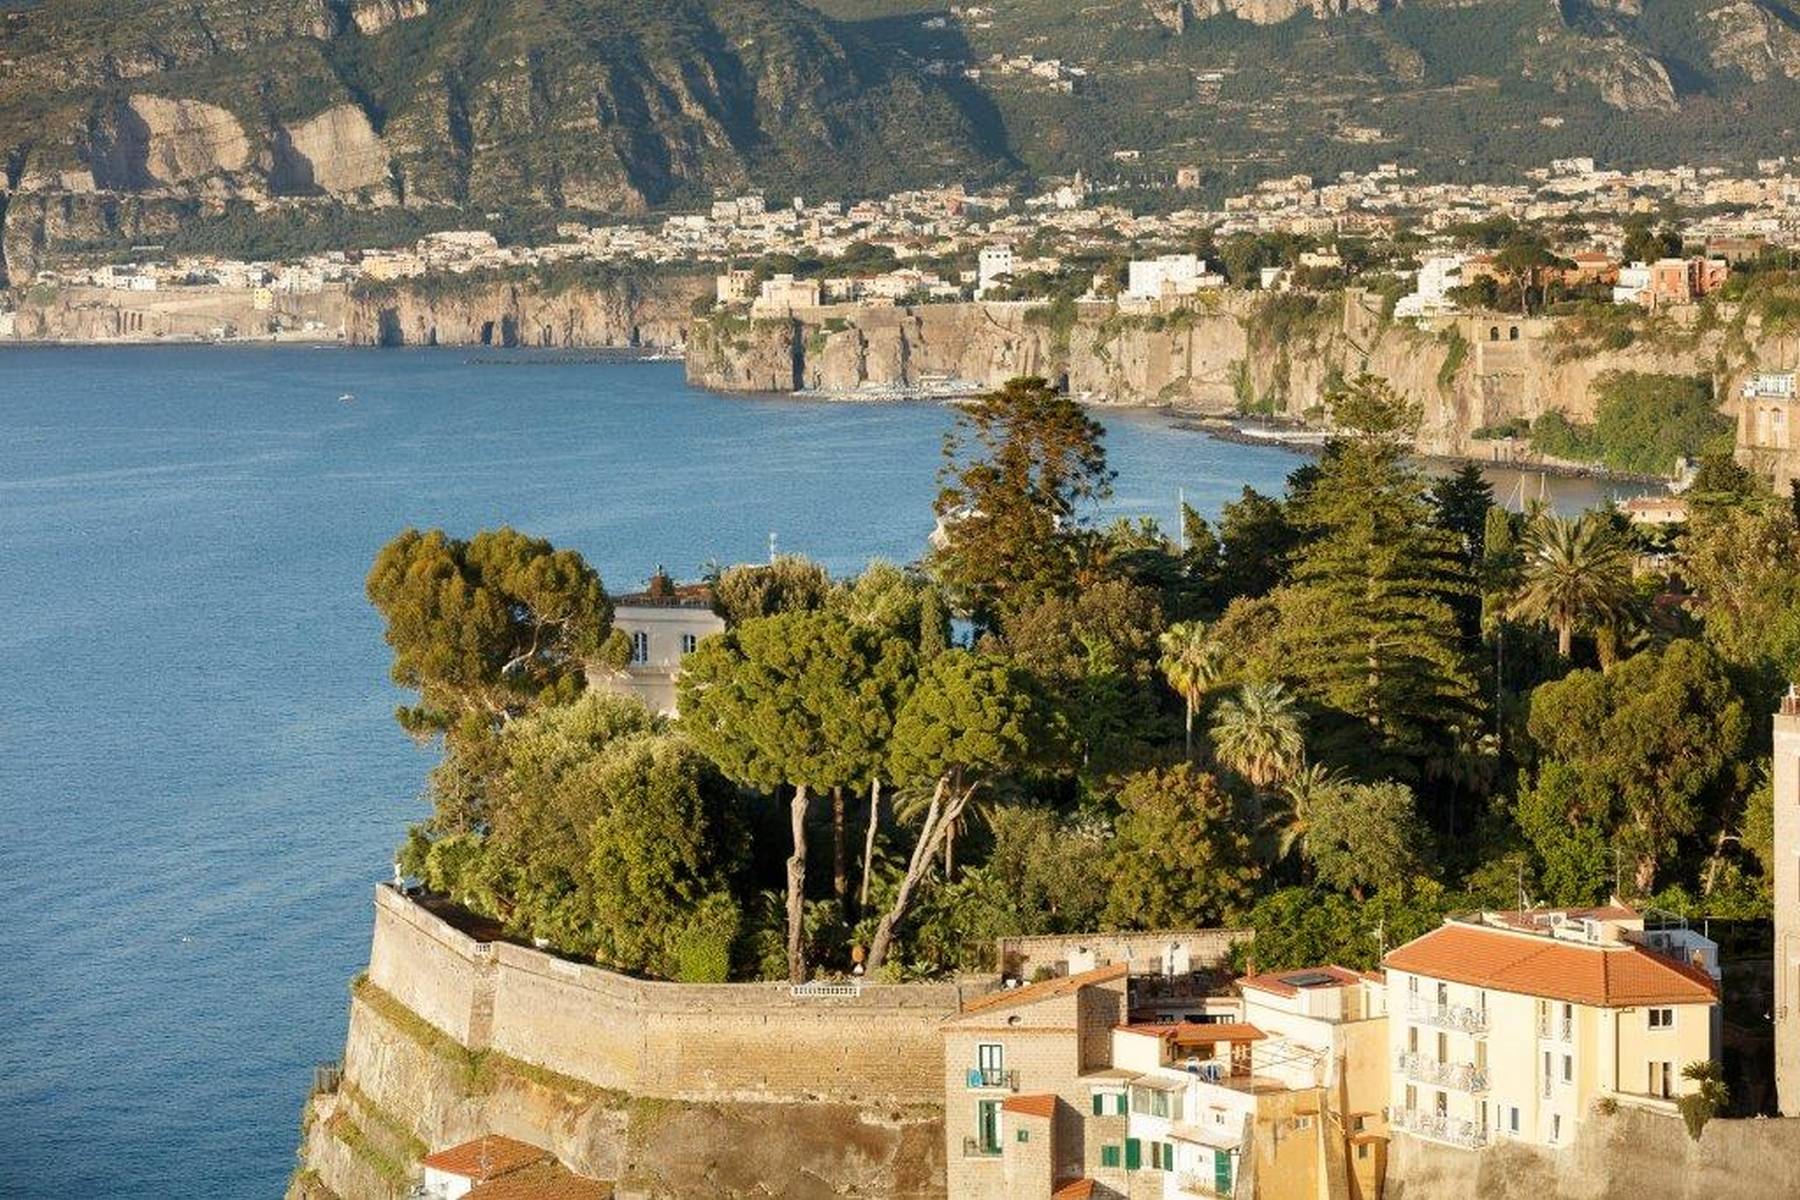 Villa dei Sonetti - A majestic estate suspended over the Mediterranean Sea - 18